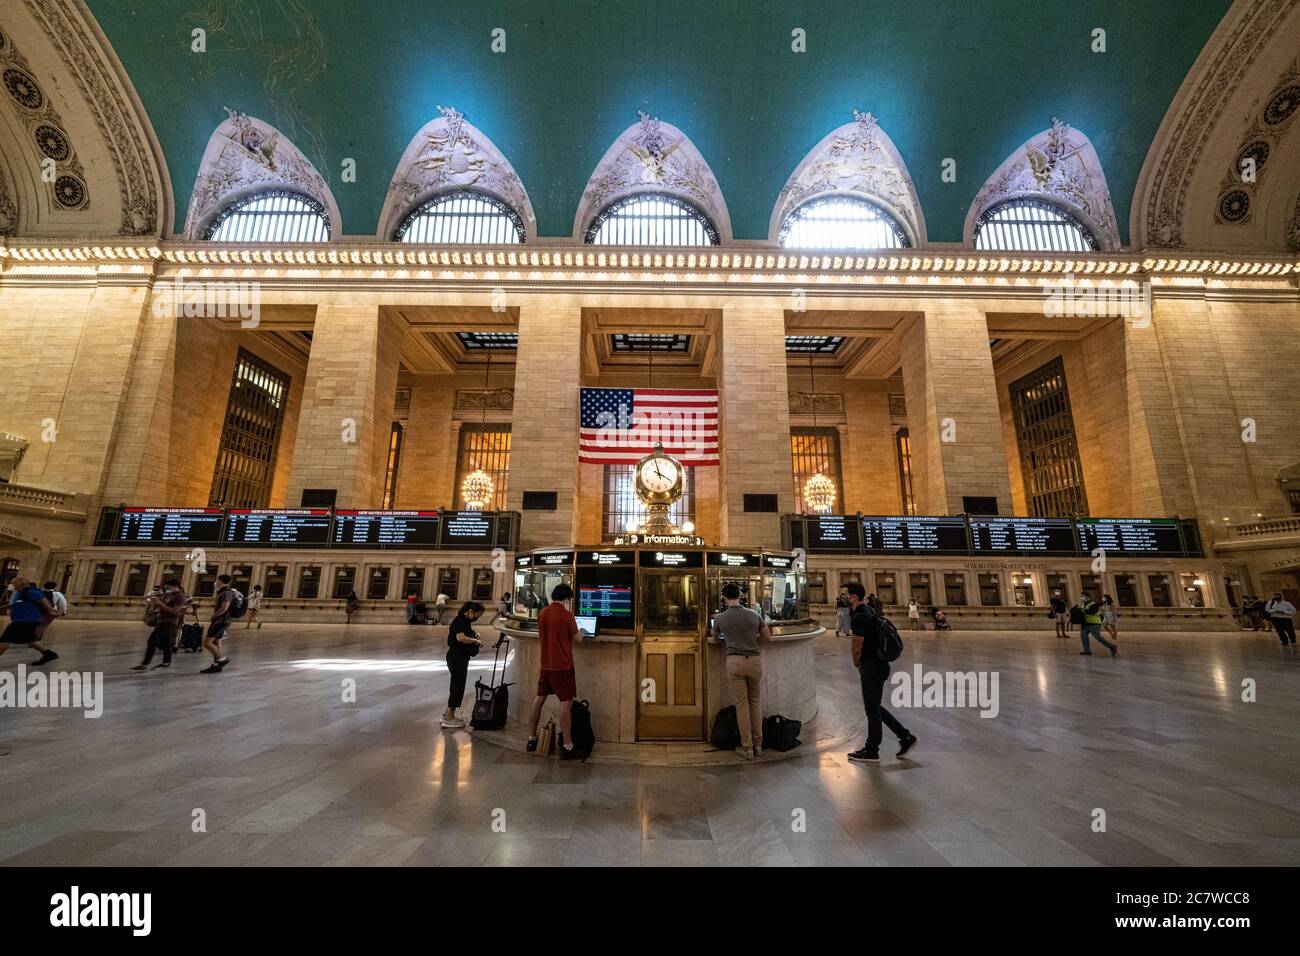 La gare Grand Central Station, le centre de transit le plus achalandé de New York, a presque déserté à l'heure de pointe même si la ville est en phase 3 rouverte depuis le 6 juillet Banque D'Images